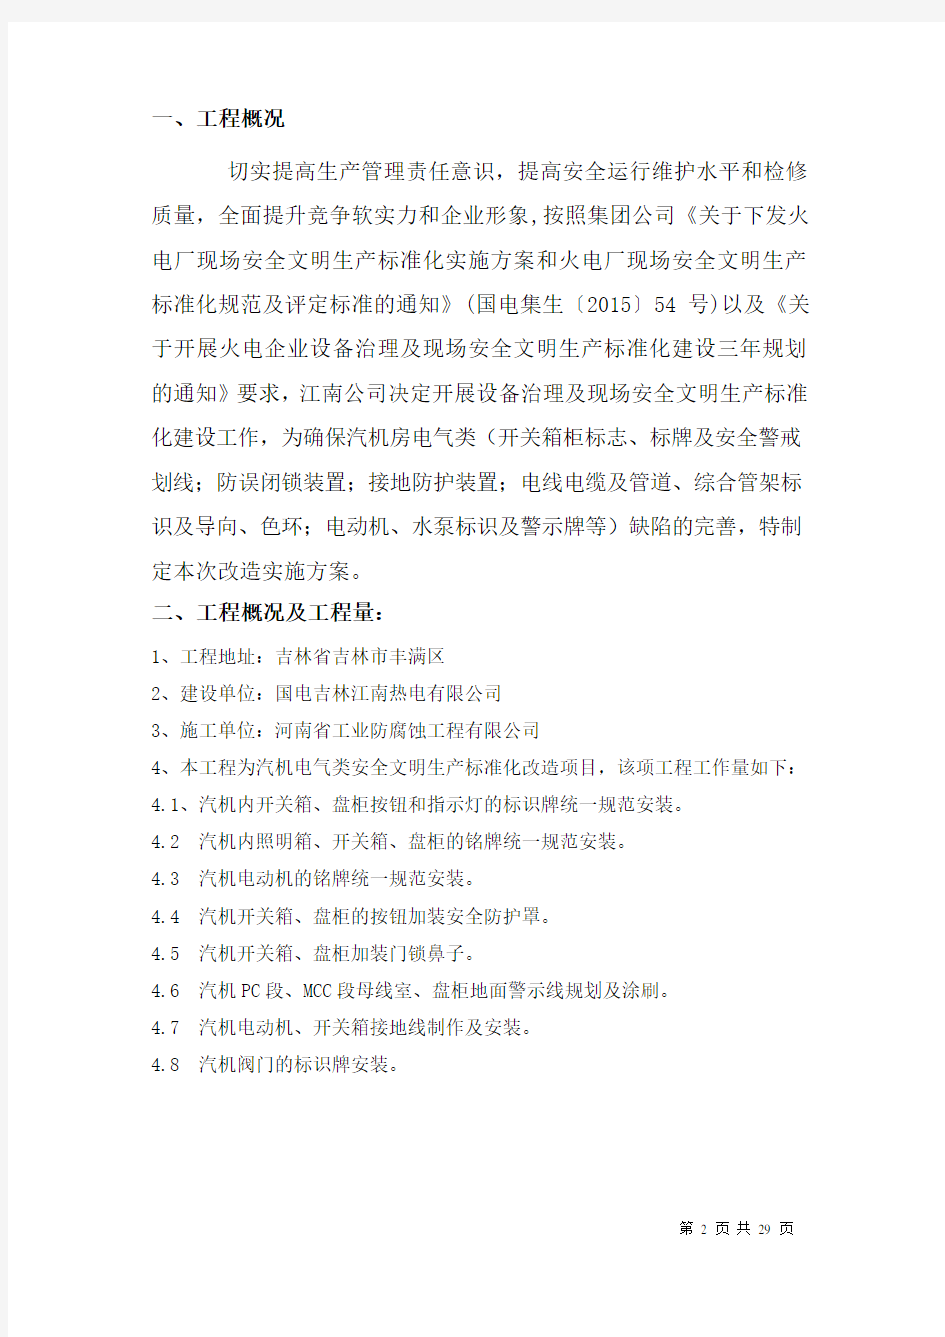 江南电厂汽机电气安全文明标准化改造技术方案(终结版)